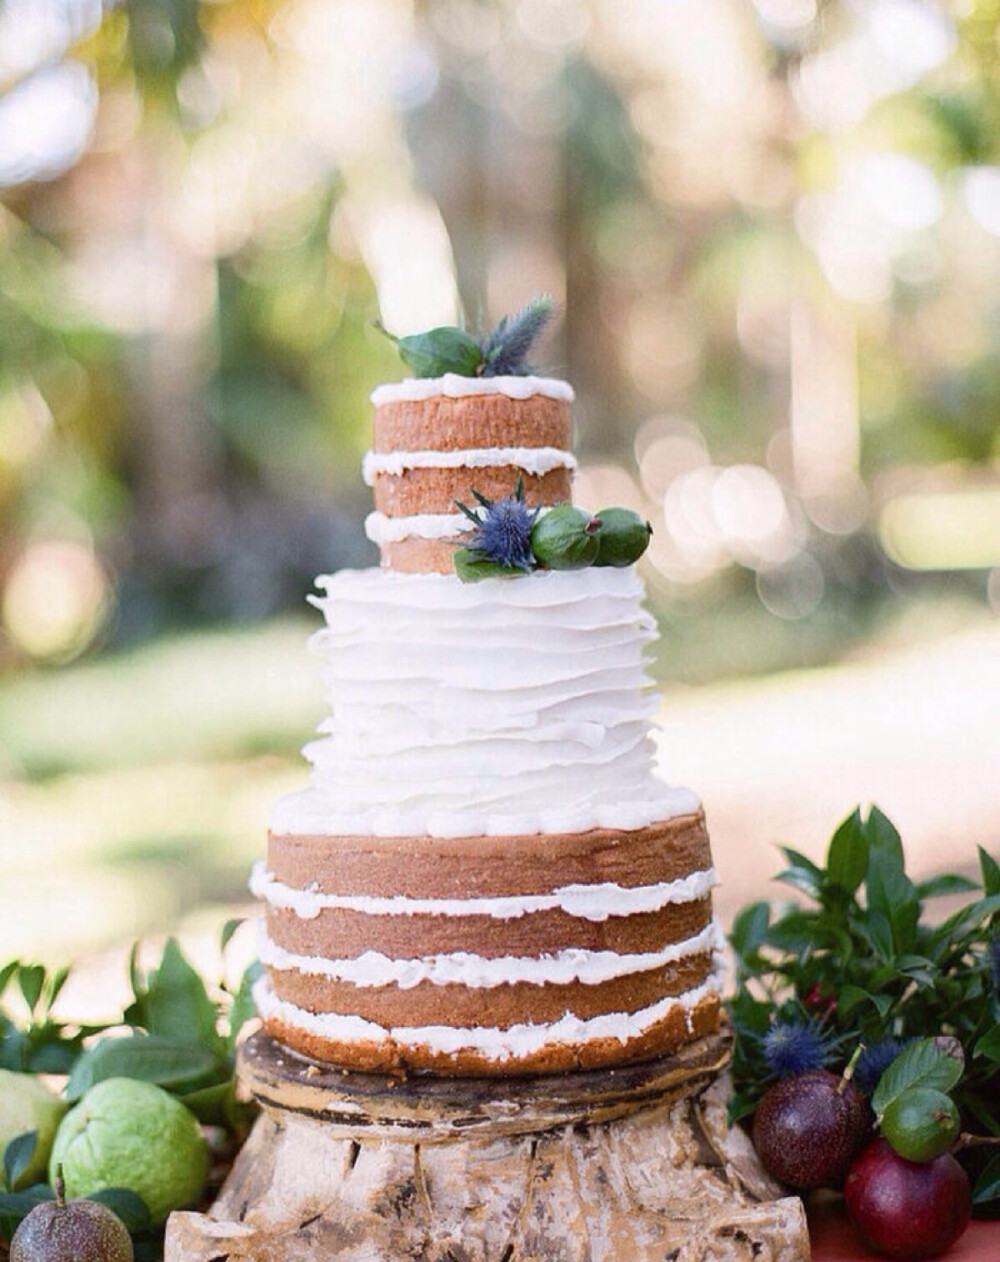 “裸蛋糕”通常只简单的搭配鲜花、绿叶和水果装扮即可，没有翻糖照样美！田园婚礼甜点专属裸蛋糕，充满清新的味道！